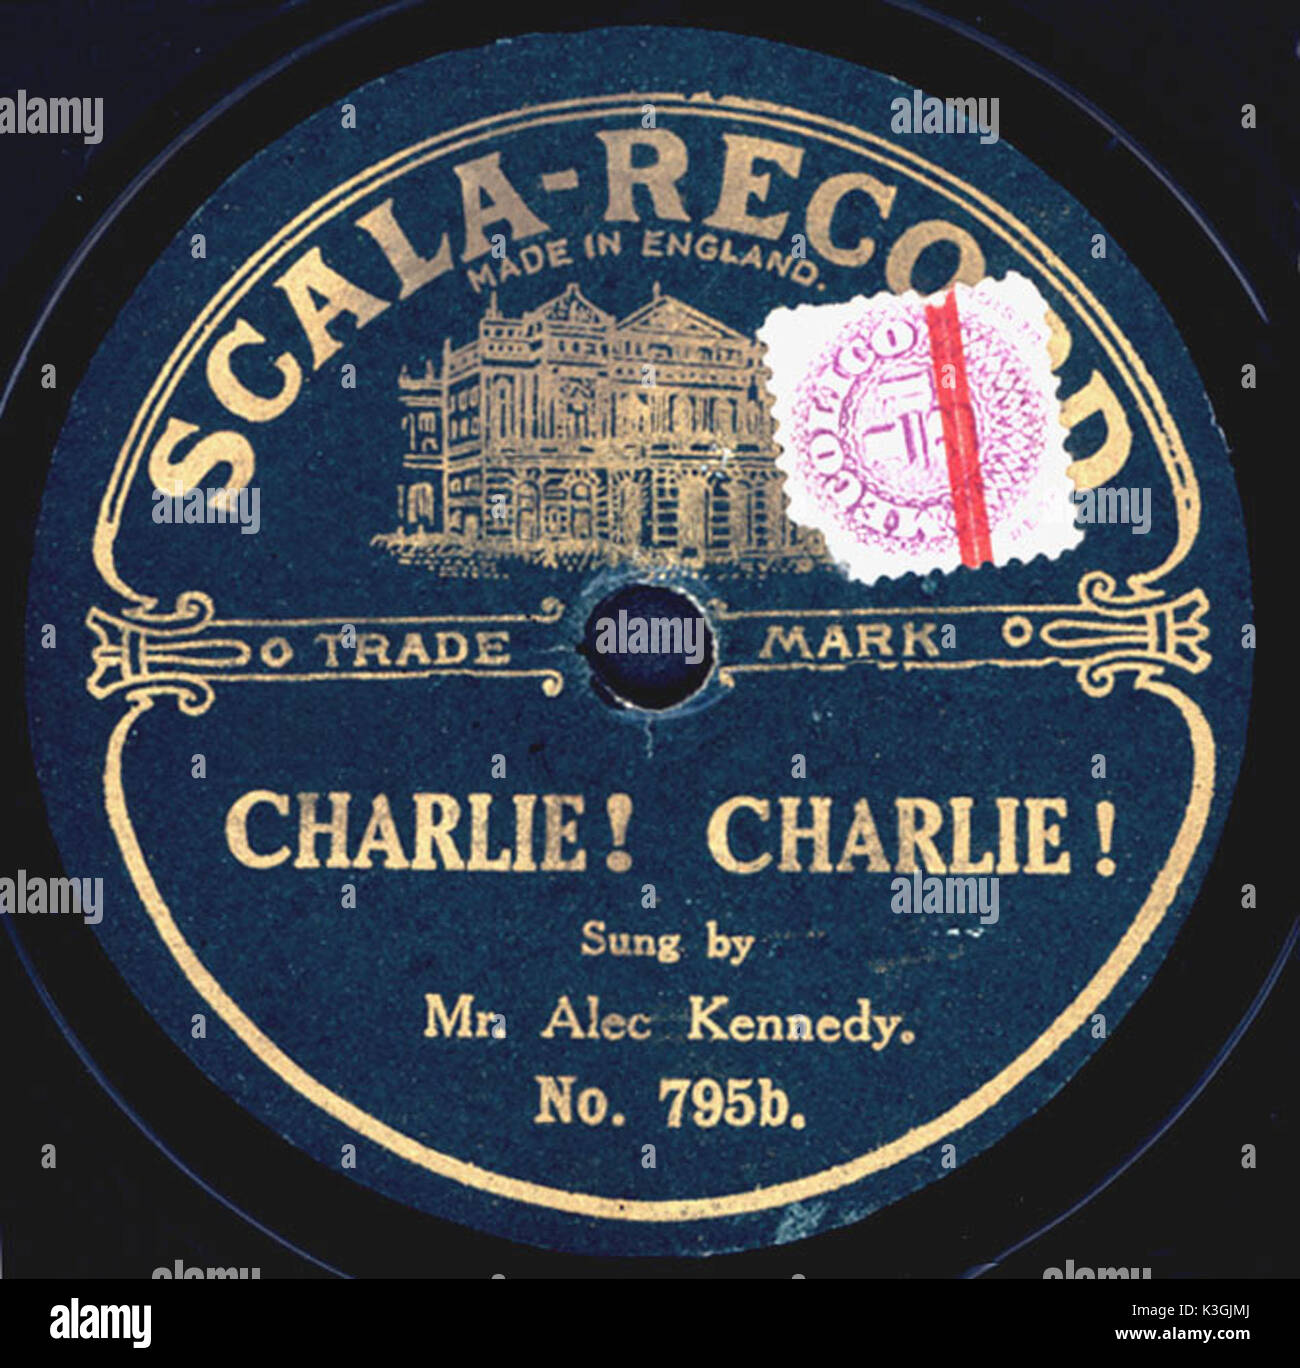 CHARLIE! CHARLIE! La registrazione di una canzone popolare sul film comico Charlie Chaplin, cantata da Alec Kennedy Foto Stock